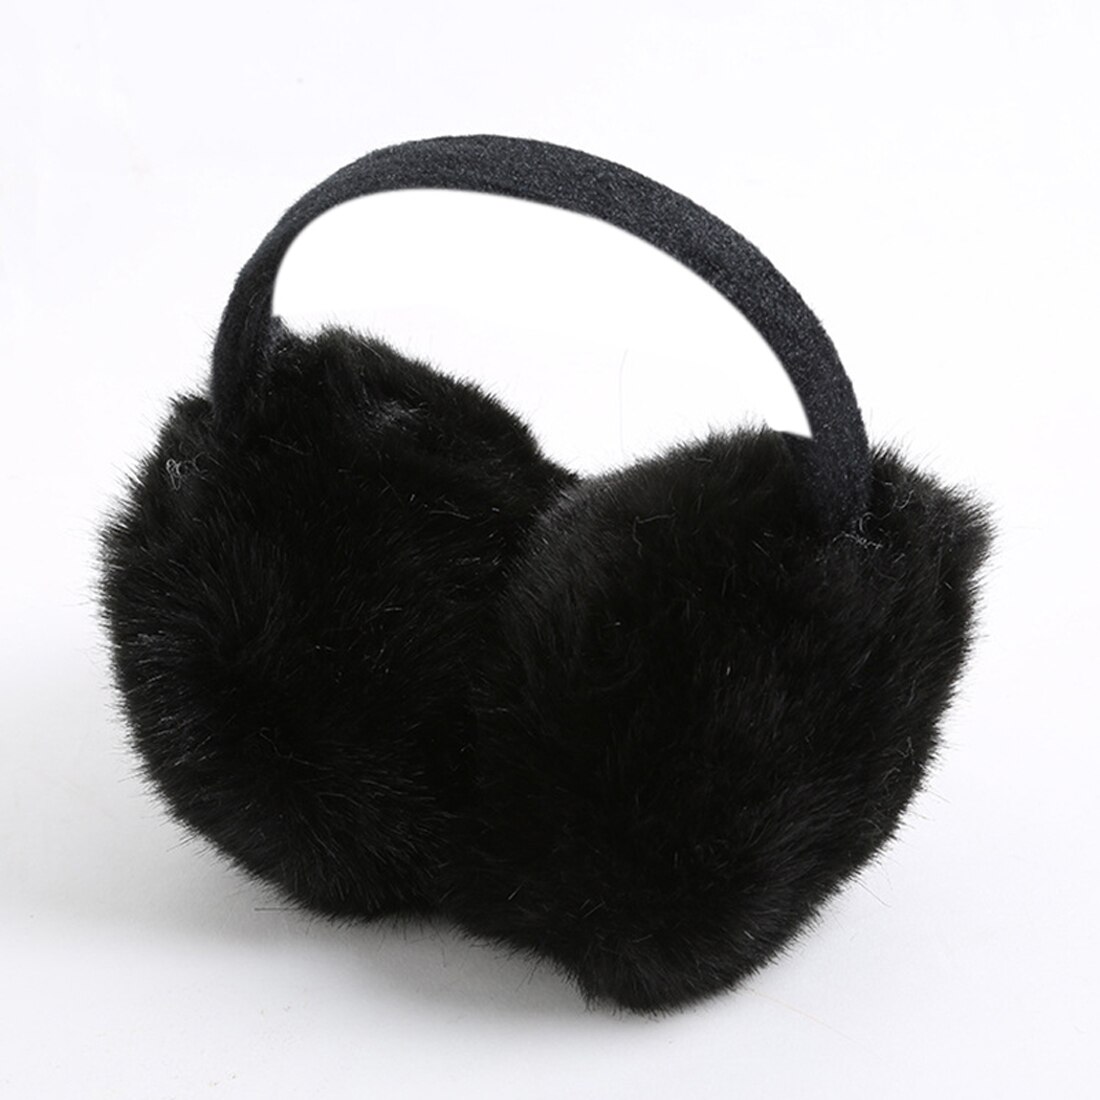 Winter Ear Muffs Fur Ear Covers Women Men Lovers Winter Warm Hairy Ear Warmers Earmuffs Best Christmas: Black